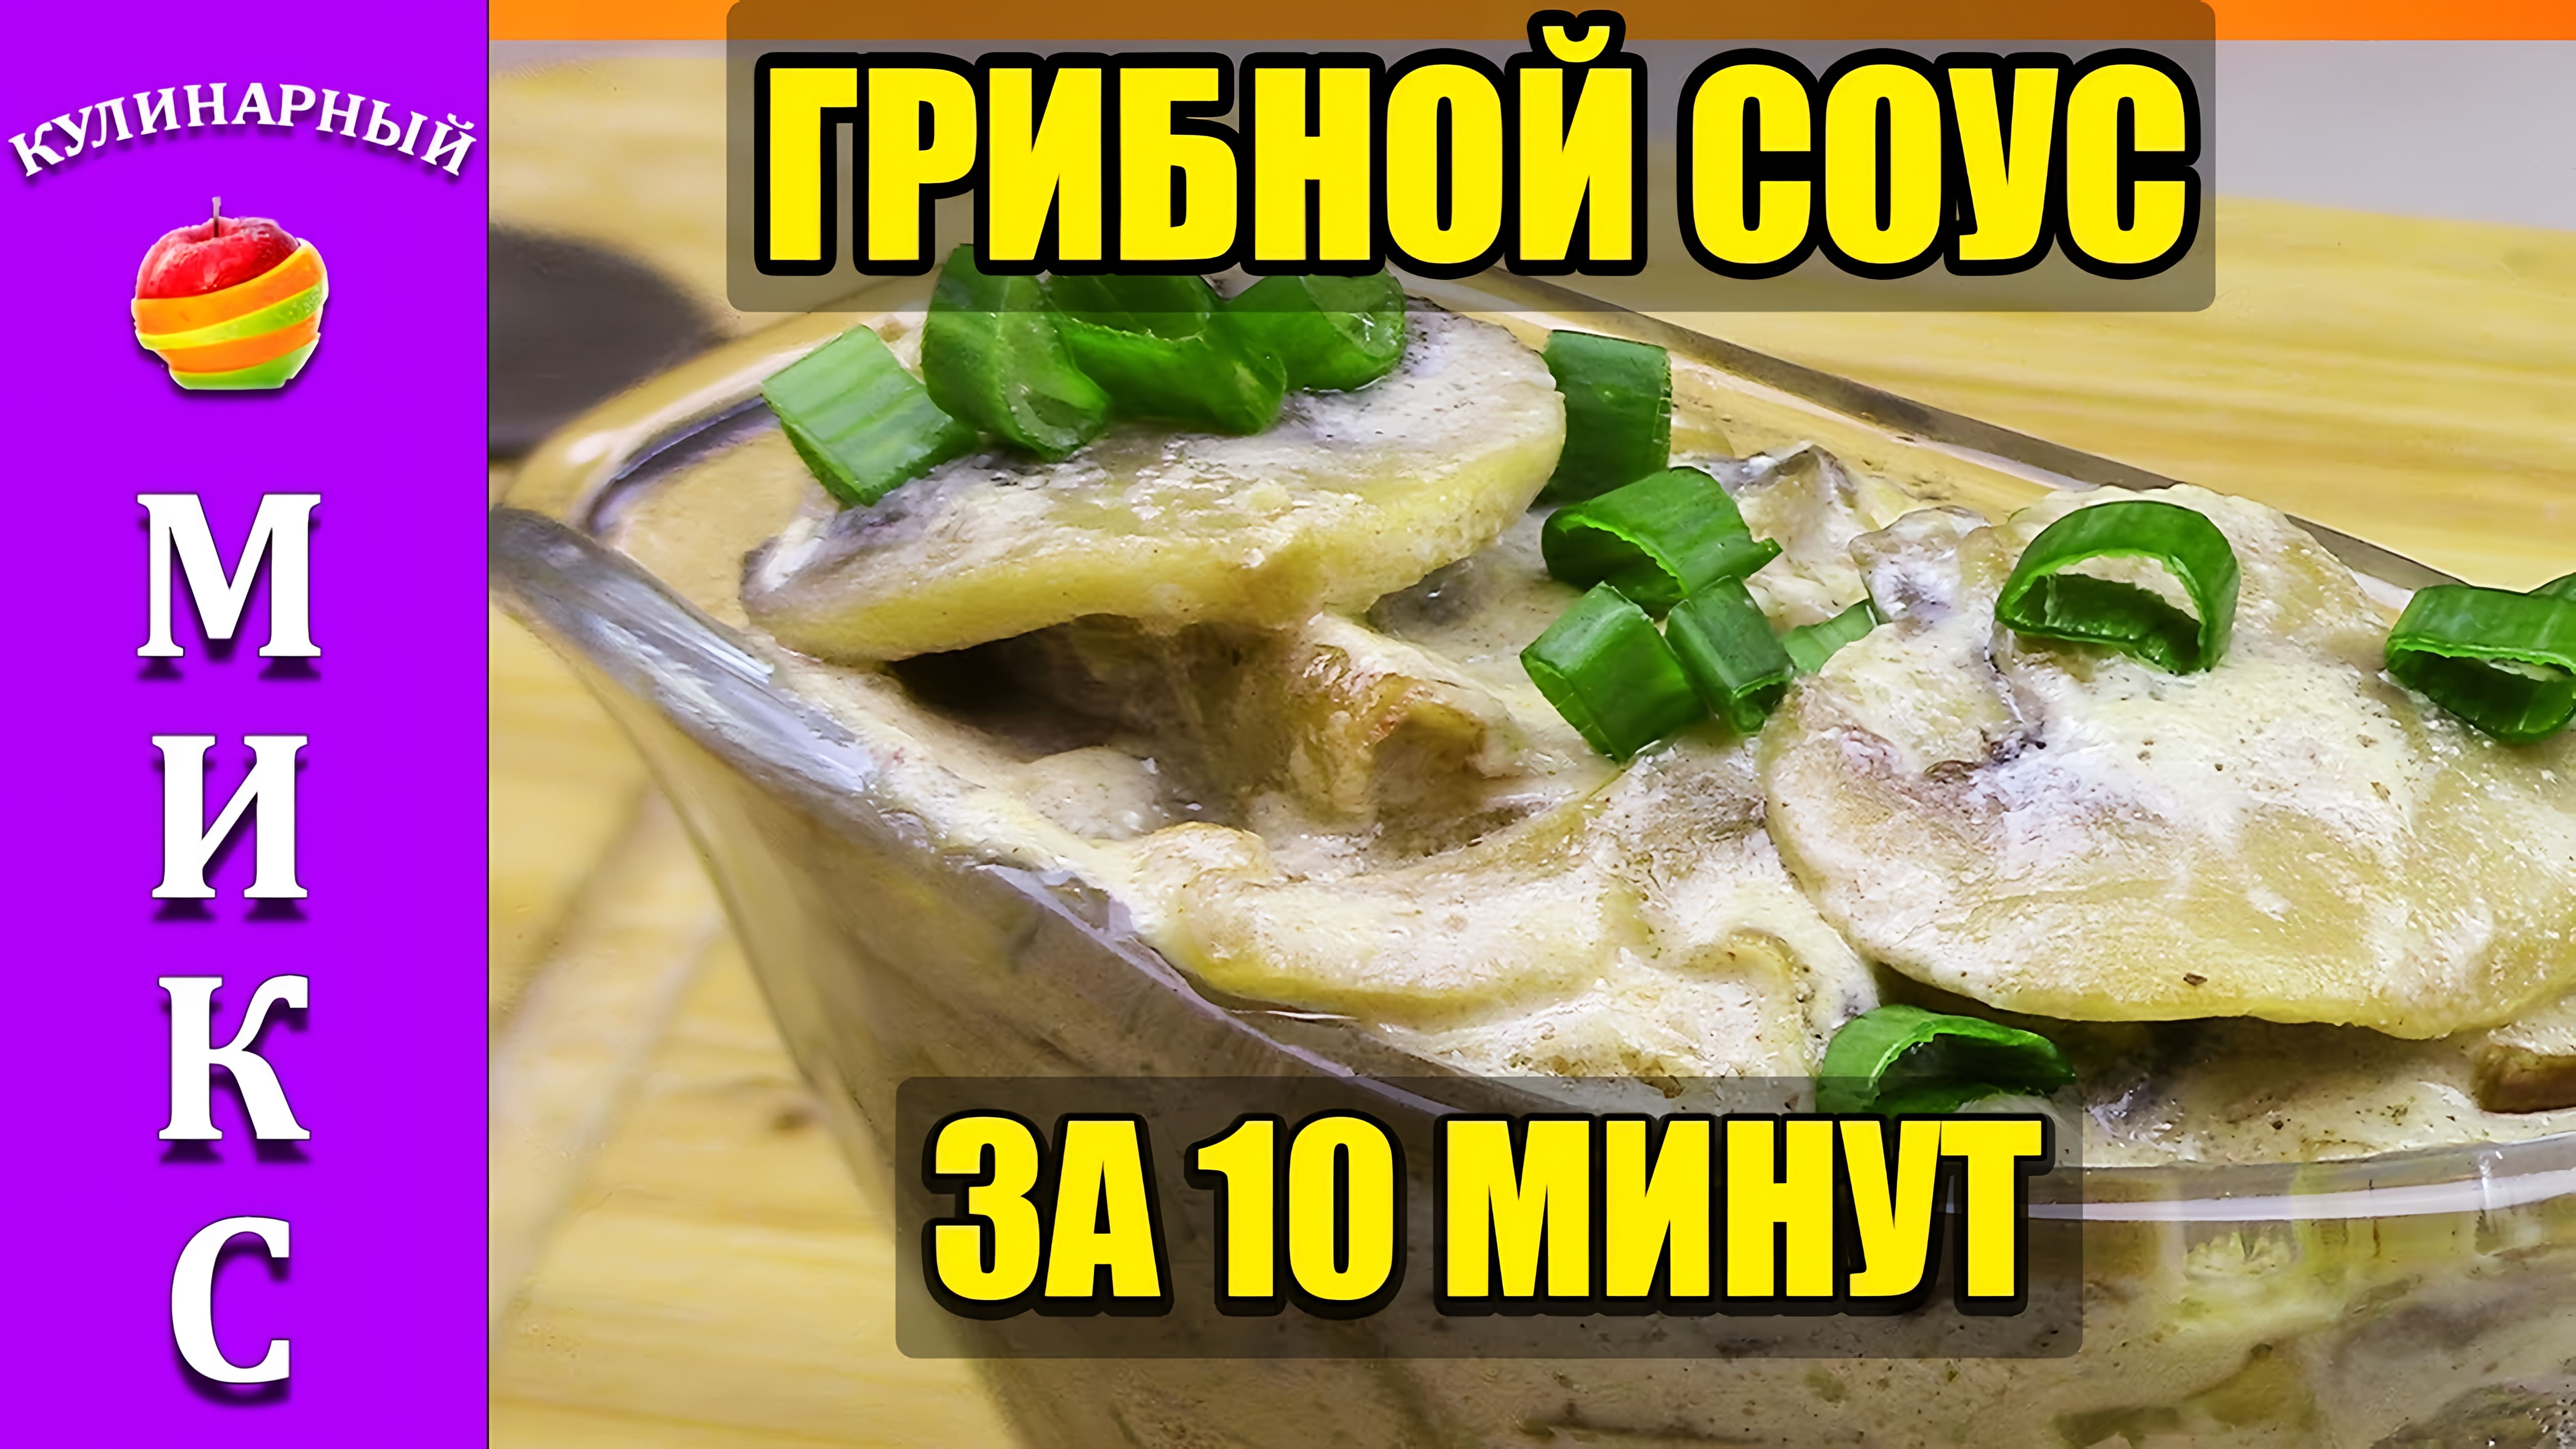 Видео: Грибной соус из шампиньонов со сметаной за 10 минут!